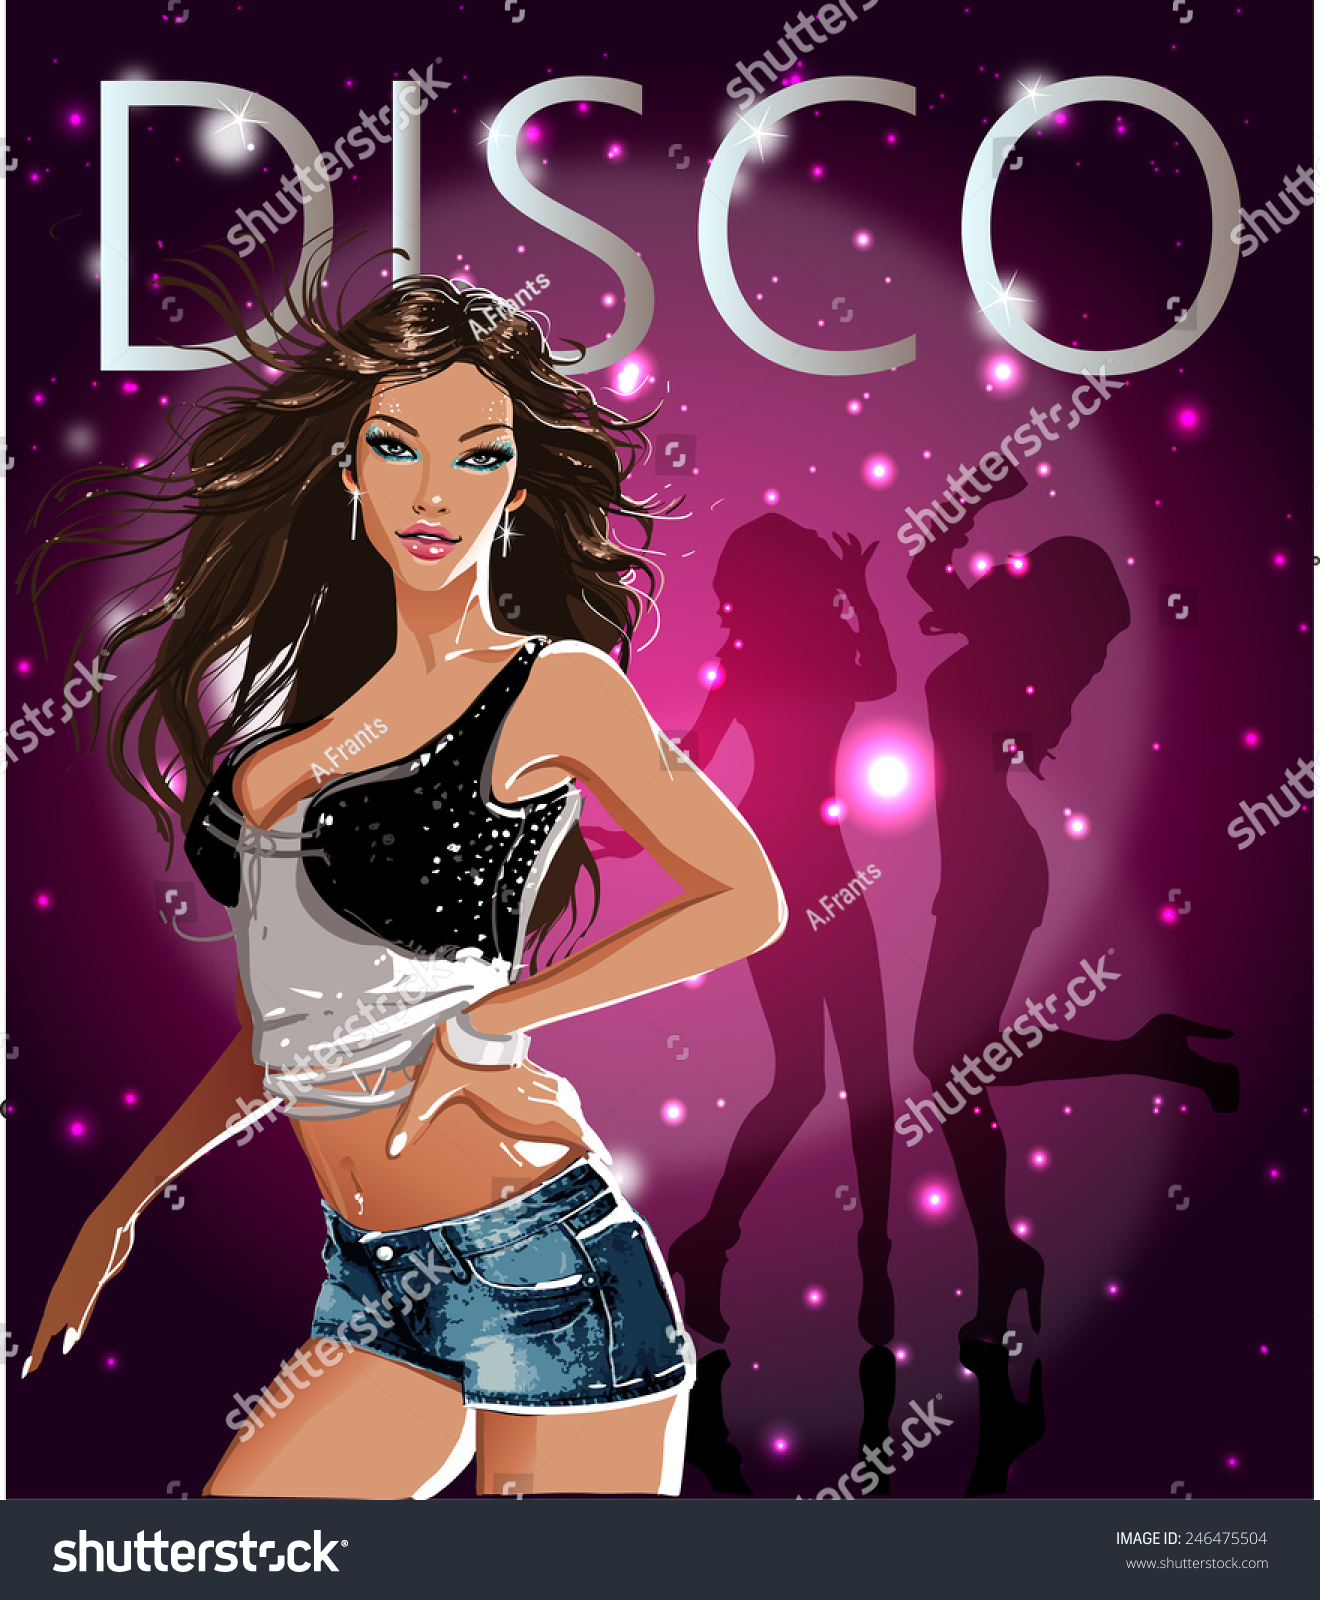 Durante ~ Bien educado Espera un minuto Banner de disco. Sexy chicas glamorosas: vector de stock (libre de  regalías) 246475504 | Shutterstock